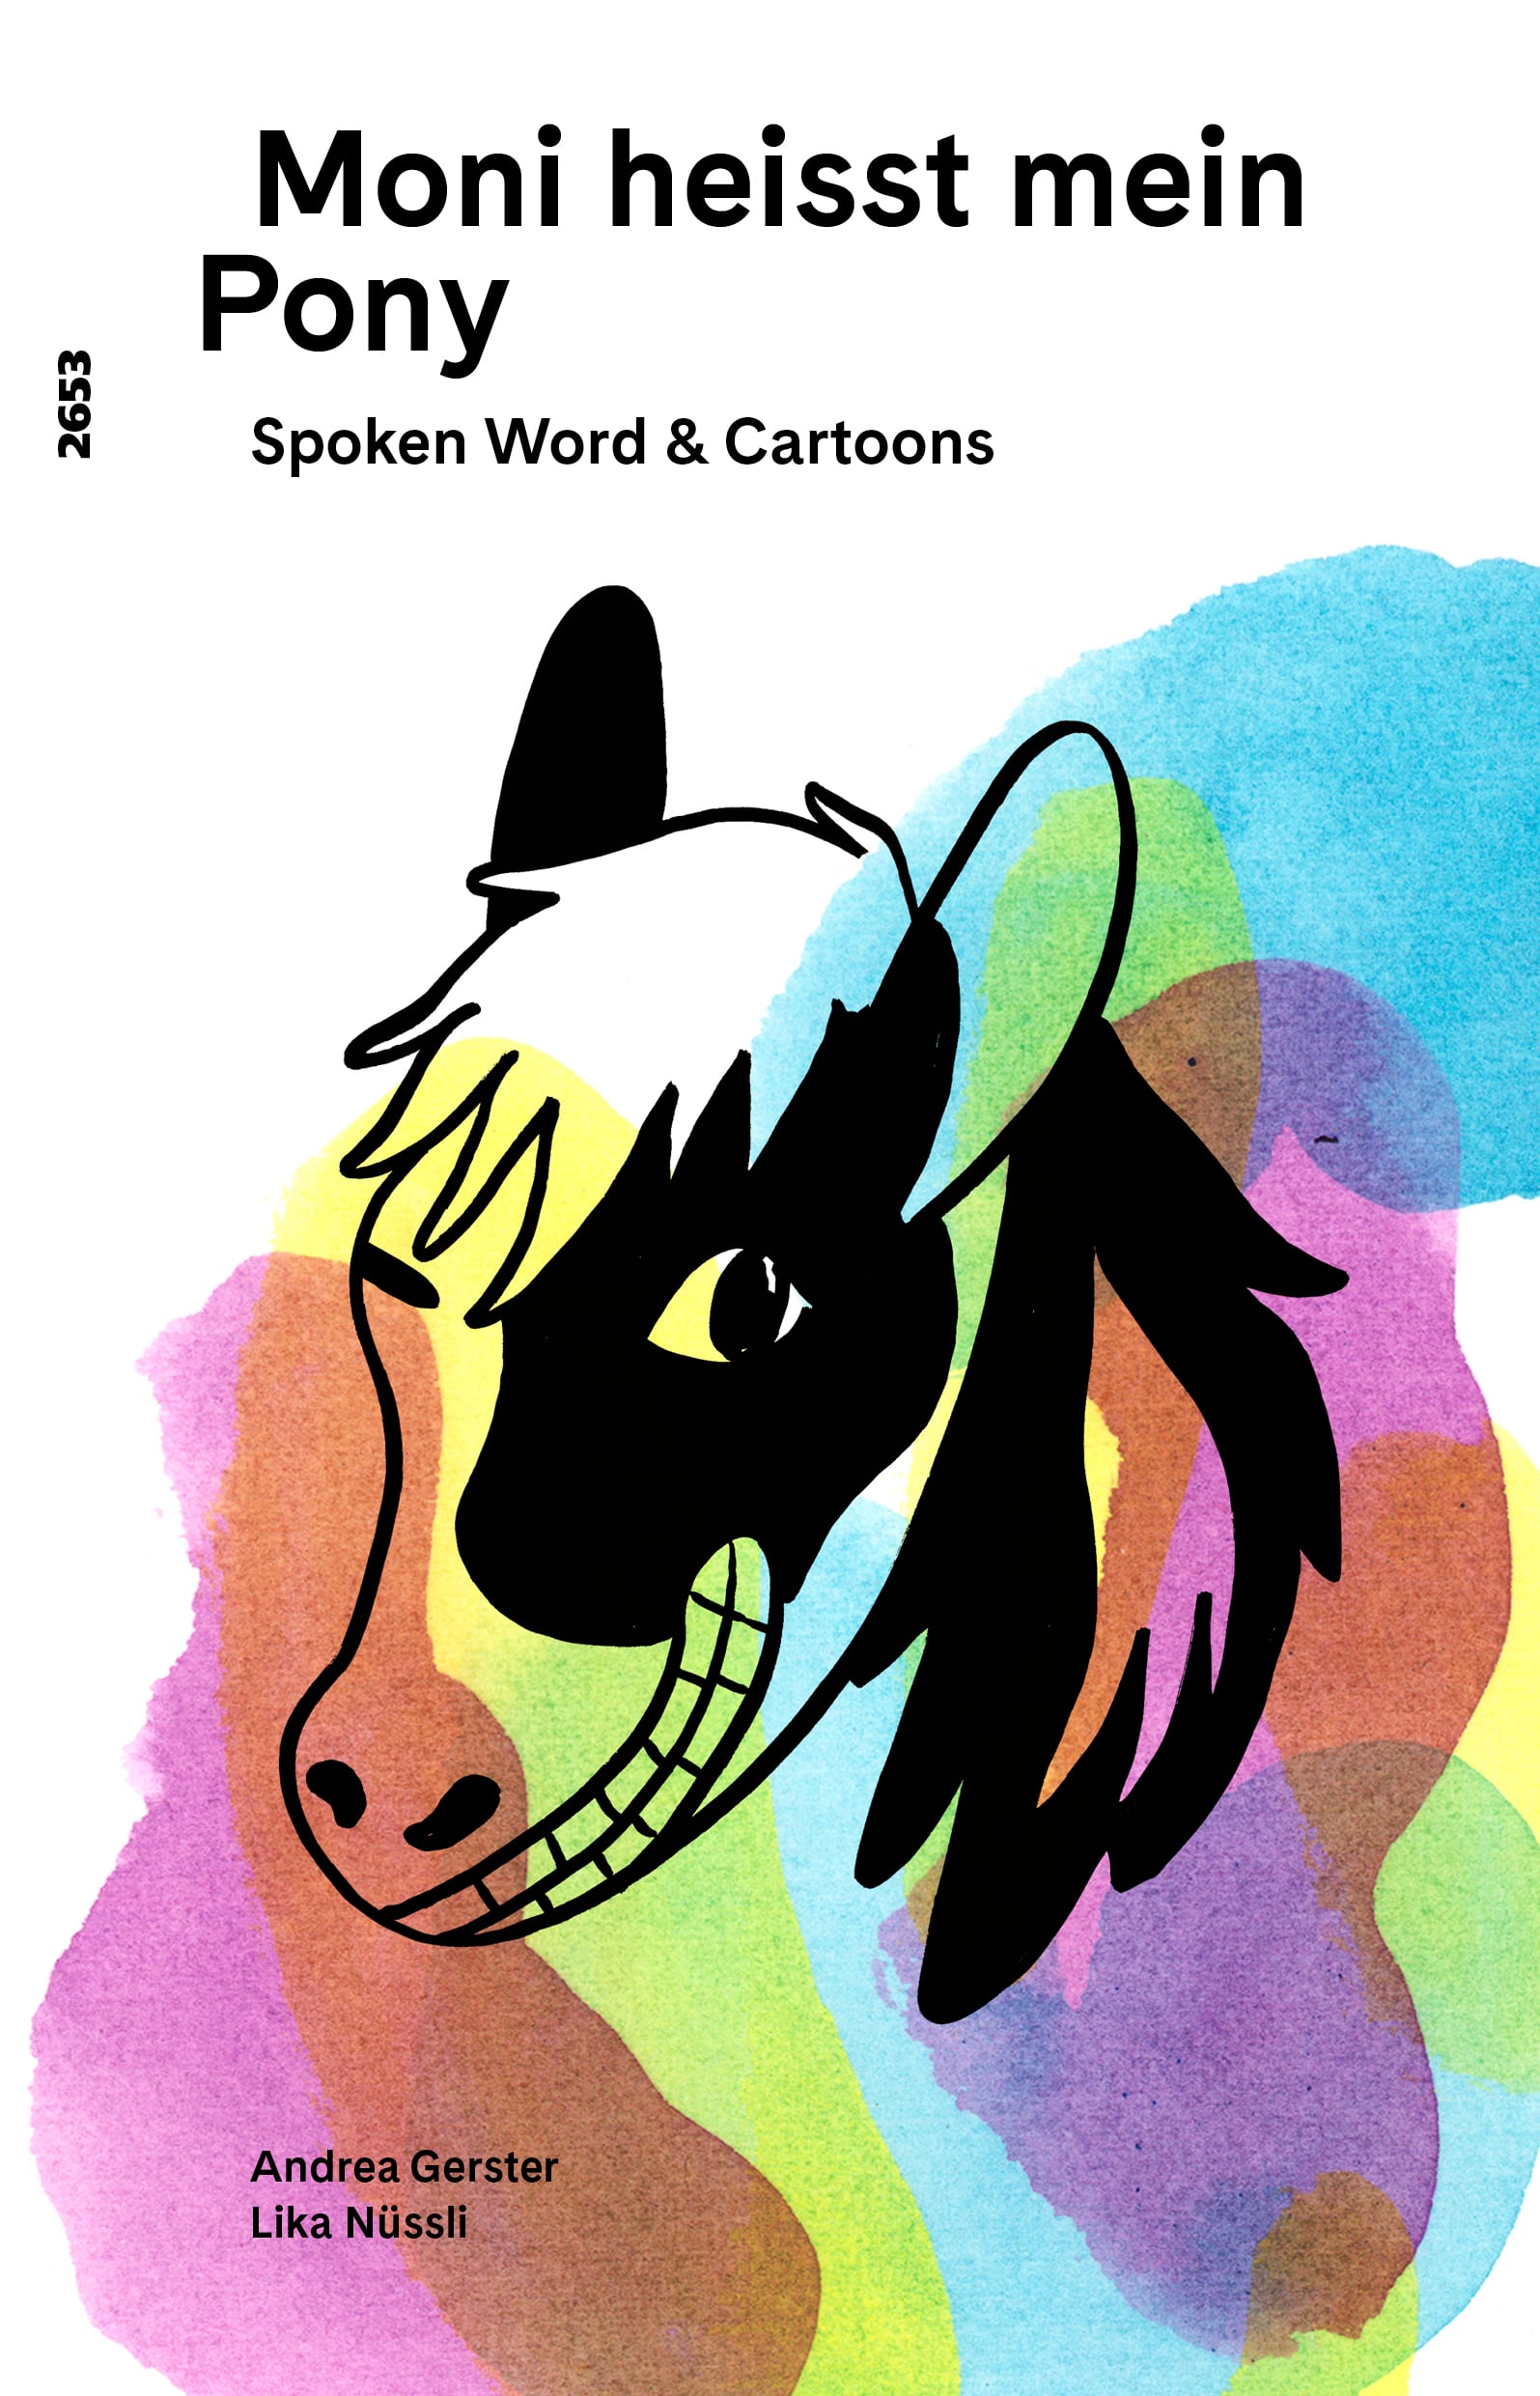 Moni heisst mein Pony, Spoken Word und Cartoons von Andrea Gerster, Illustration von Lika Nuessli, SJW Verlag, Sprachspiele